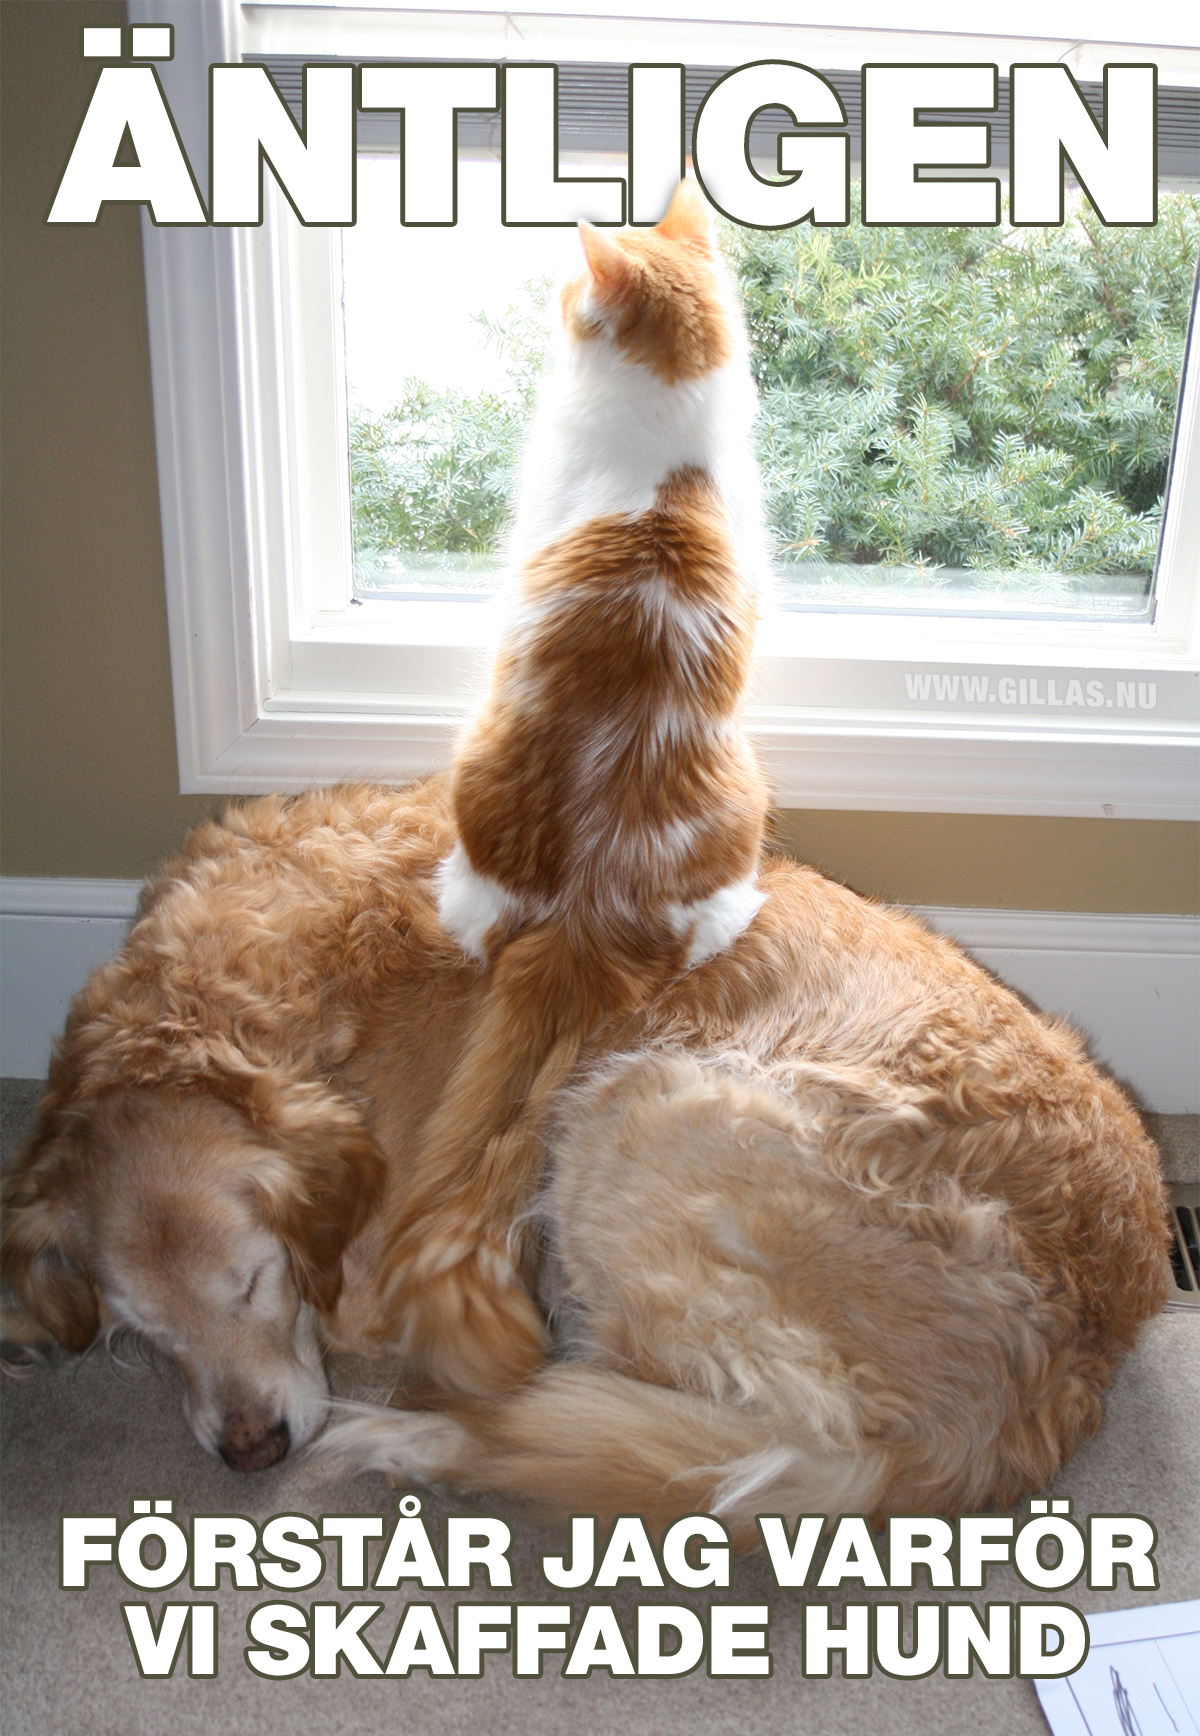 Katt som sitter på hund och tittar ut genom fönstret - Äntligen förstår jag varför vi skaffade hund